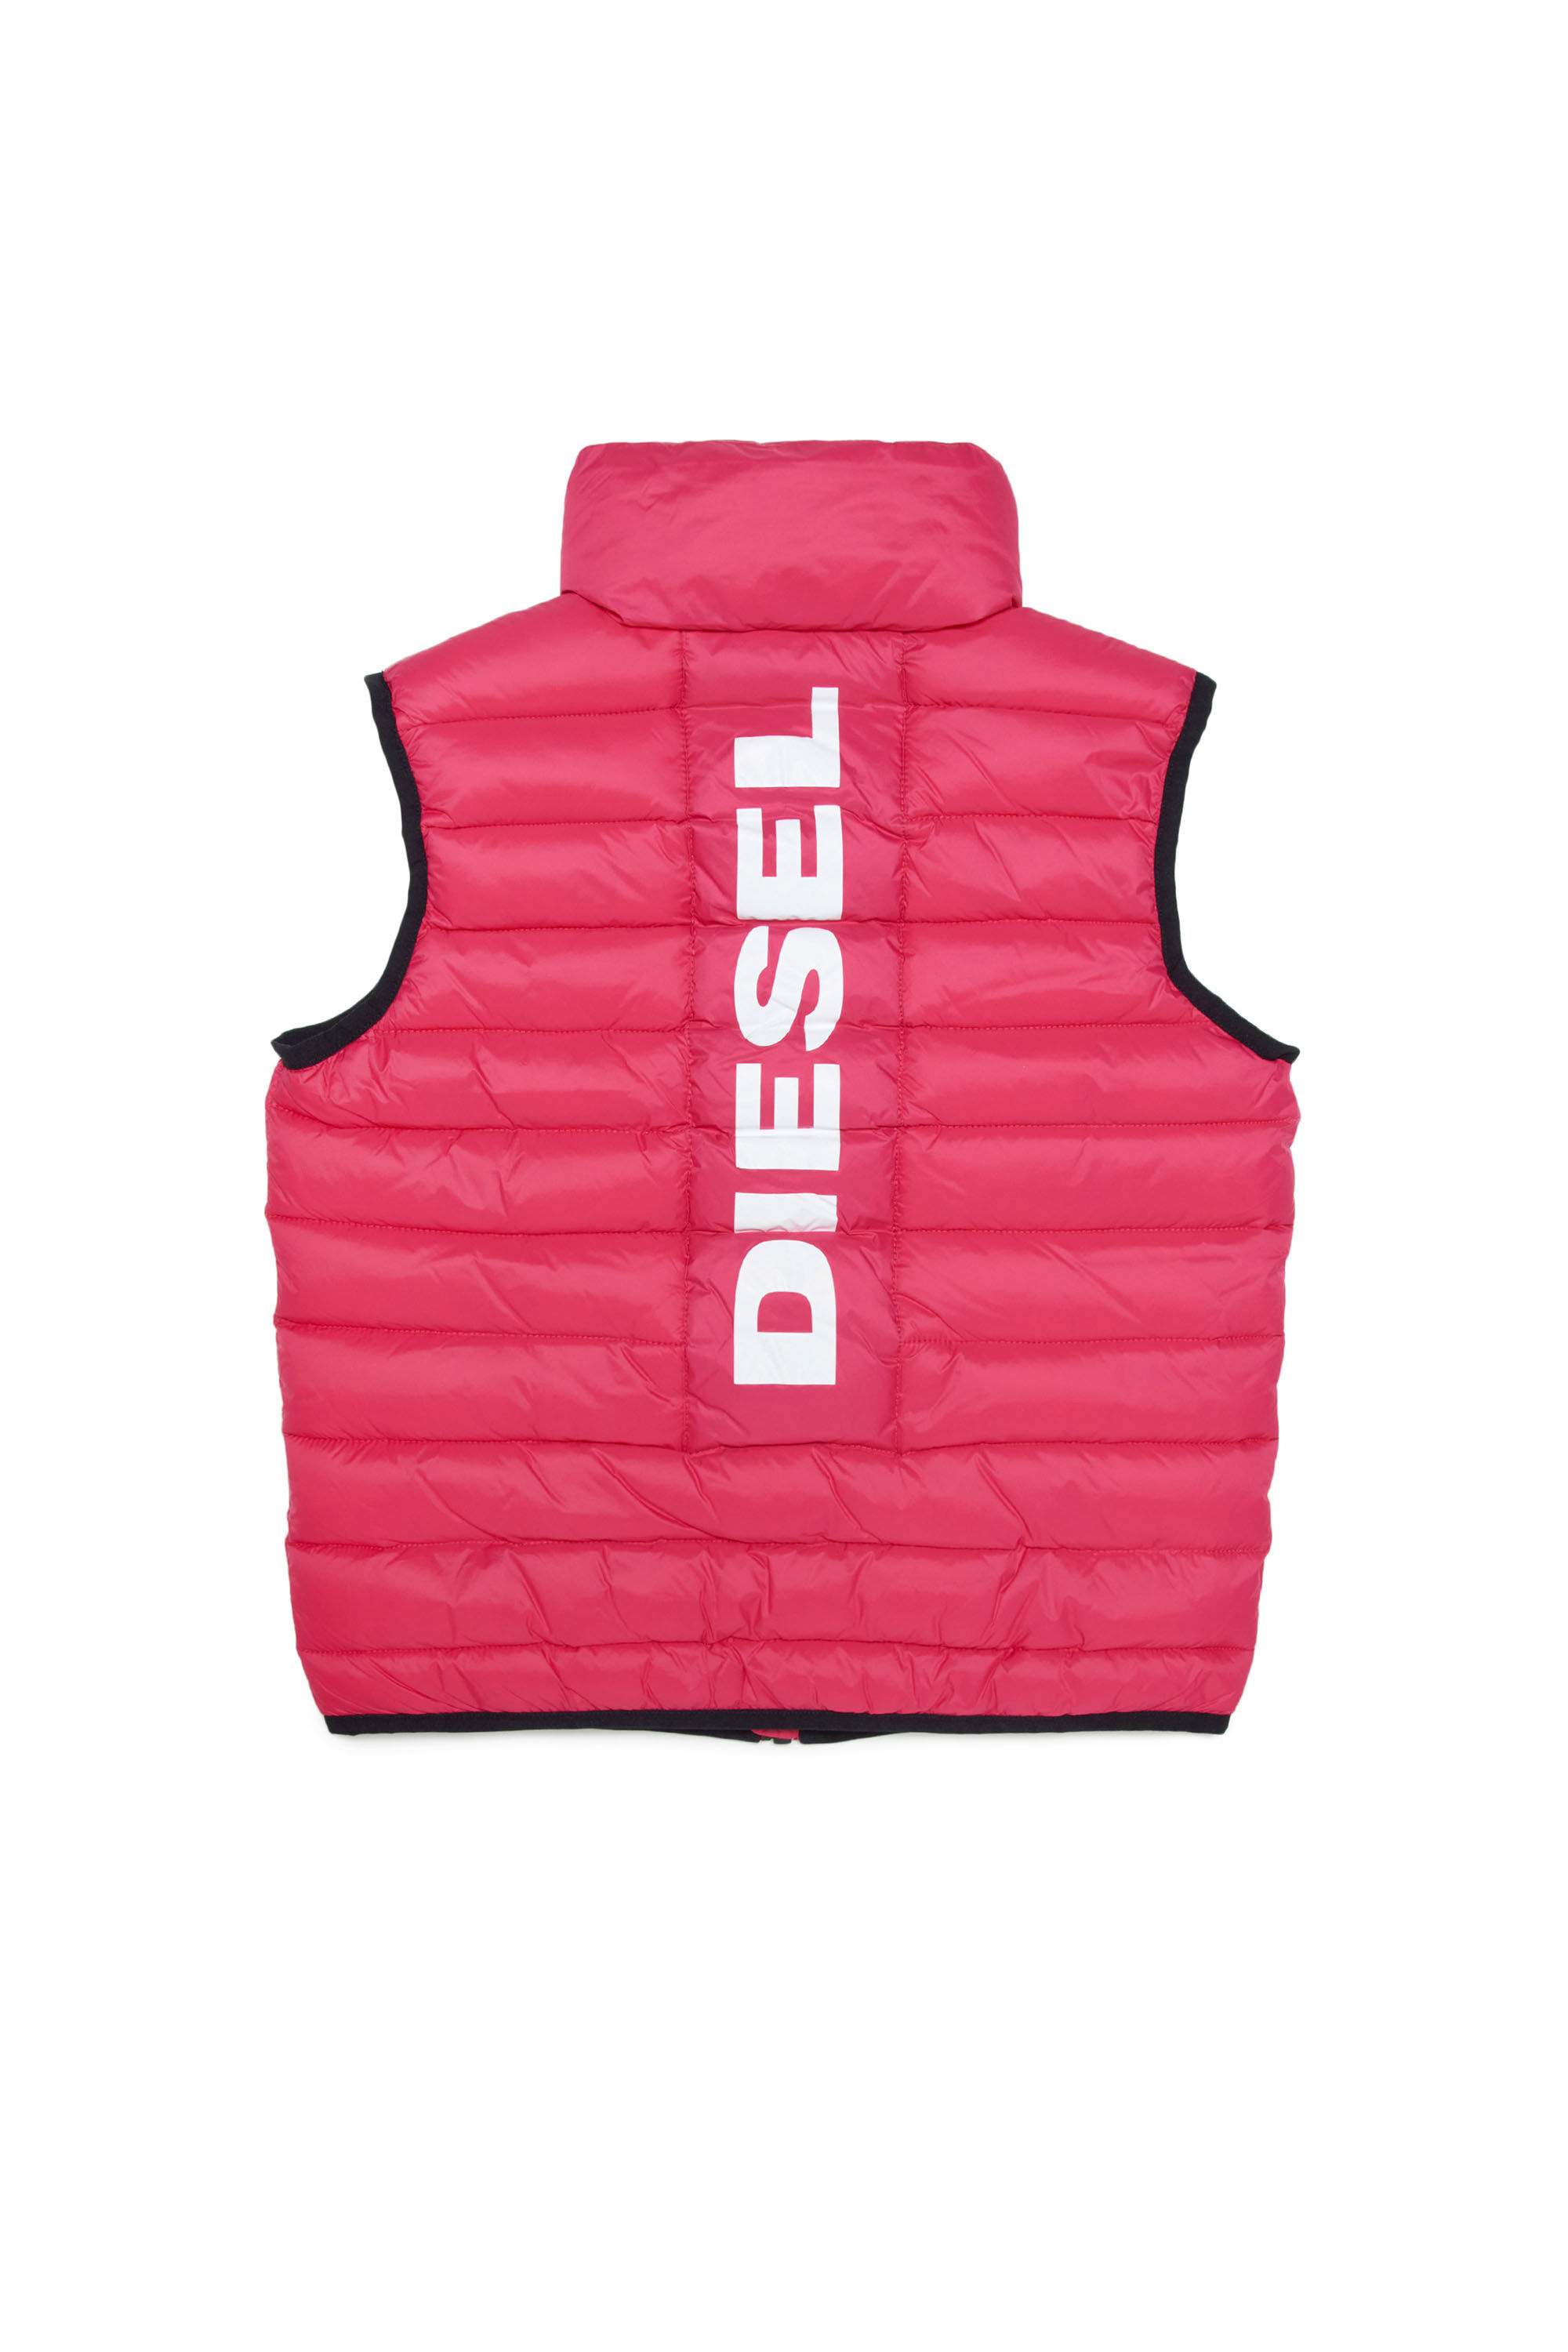 Diesel - JOLICE-SL, Pink - Image 2